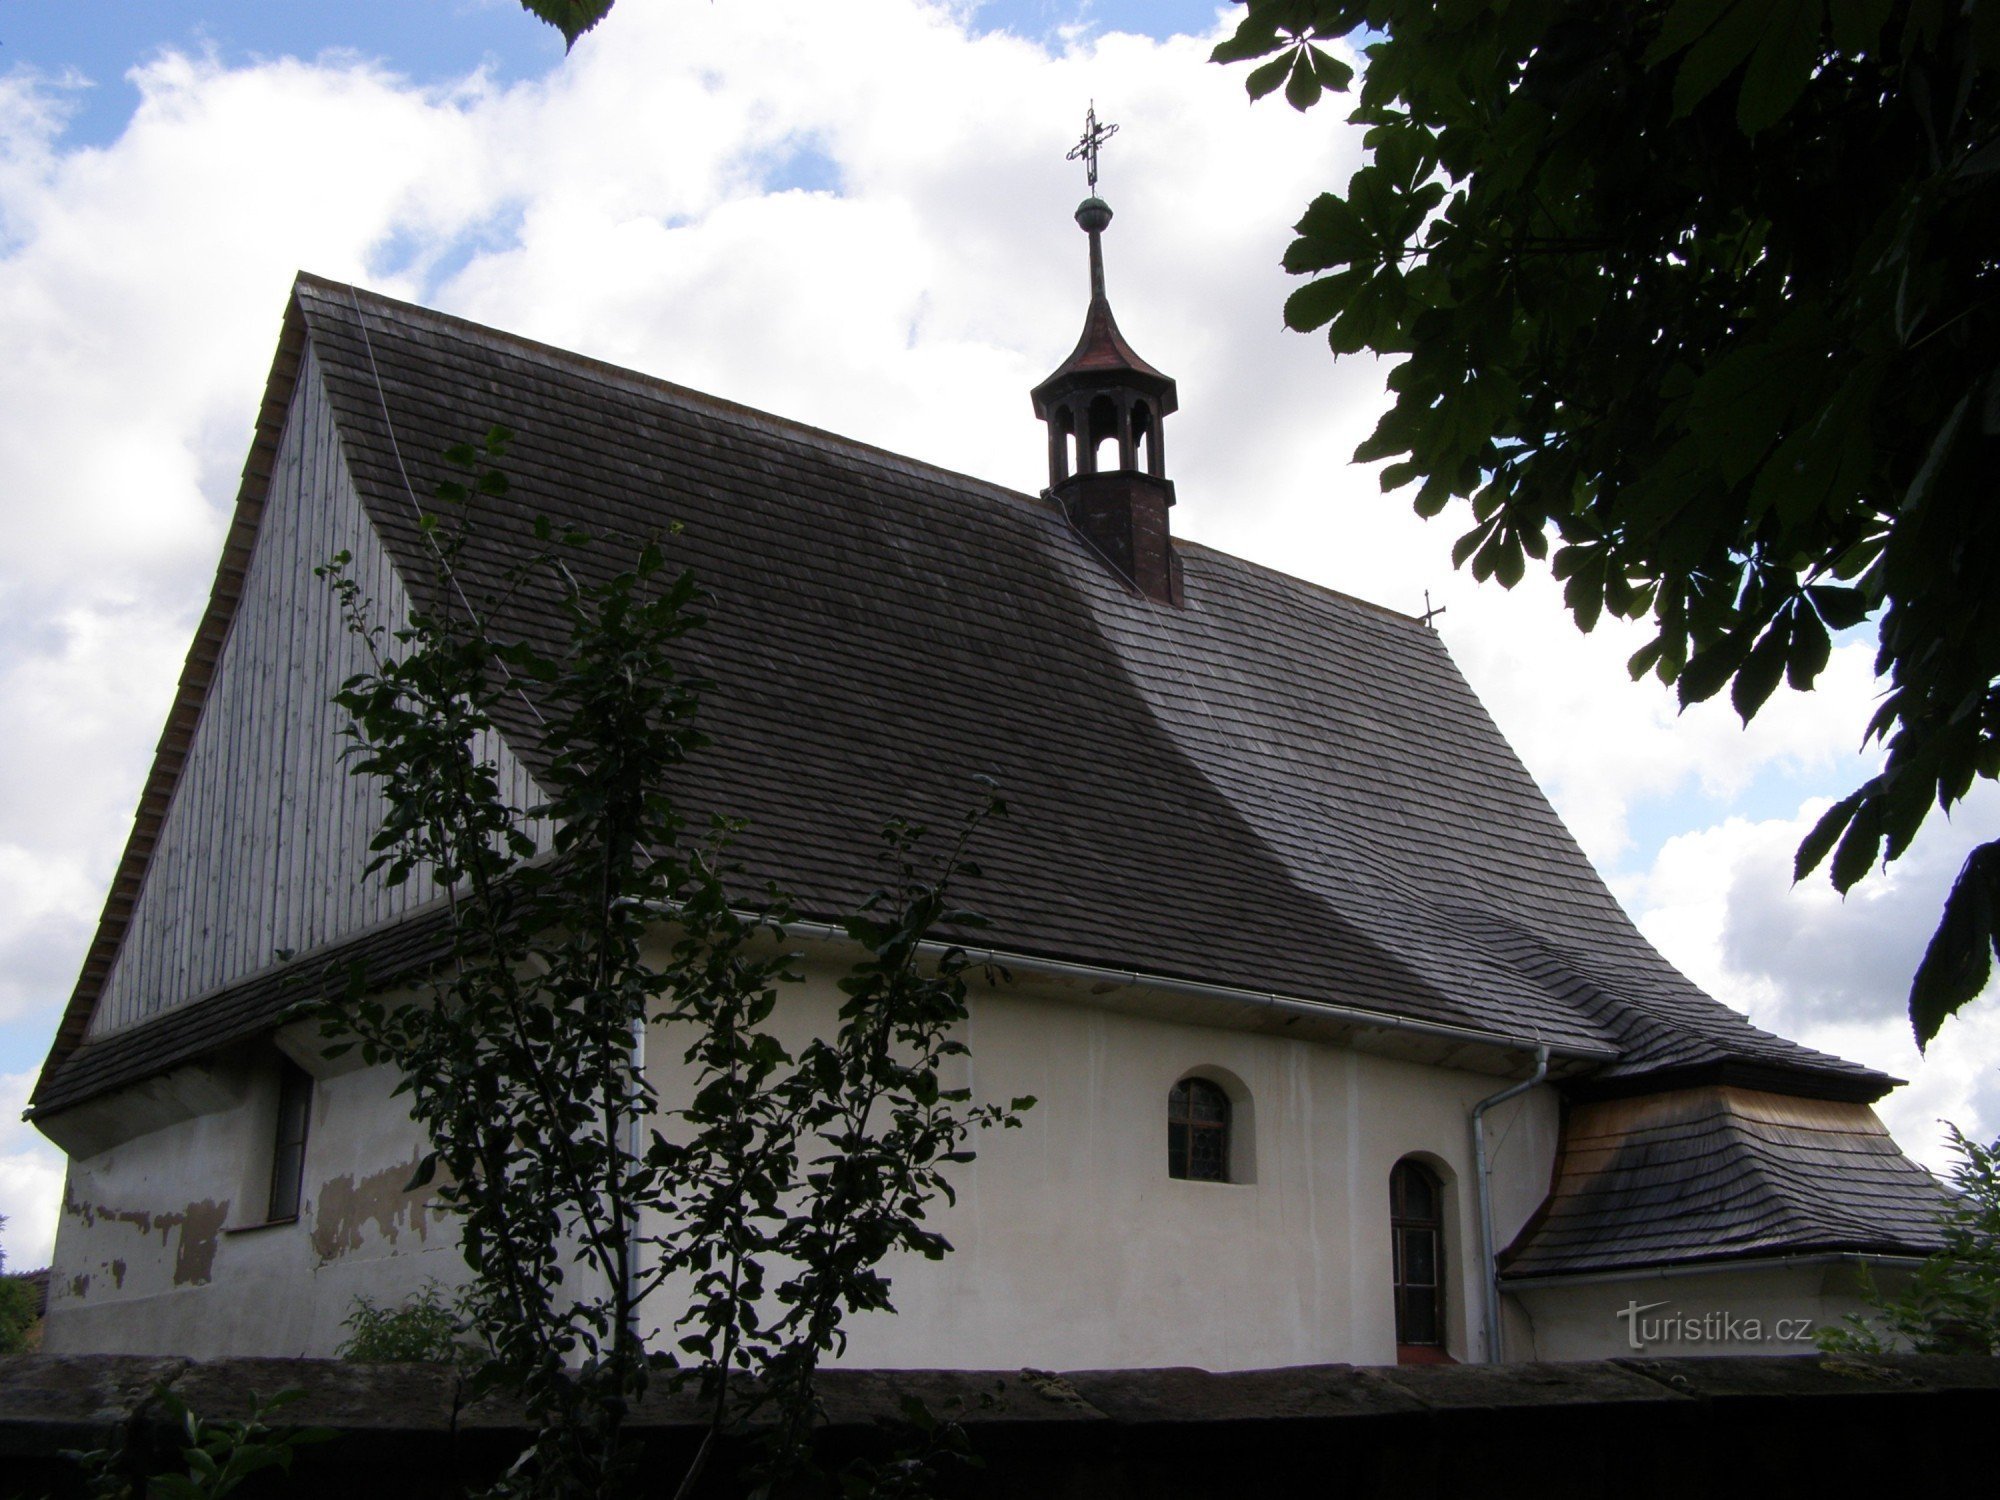 Vysočany - träkyrkan St. Marknader